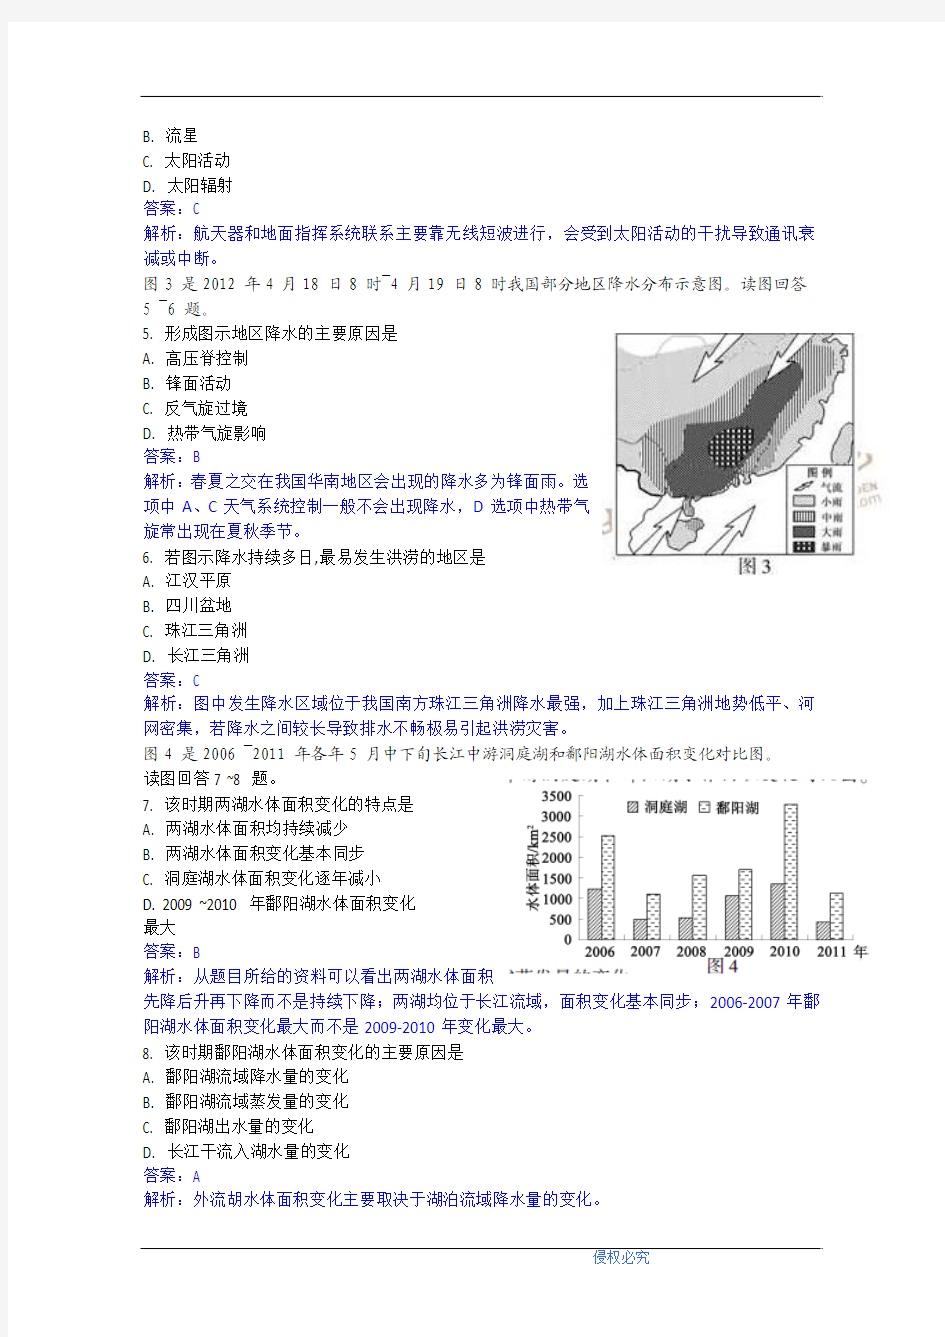 2012年高考真题——地理(江苏卷)解析版(1)